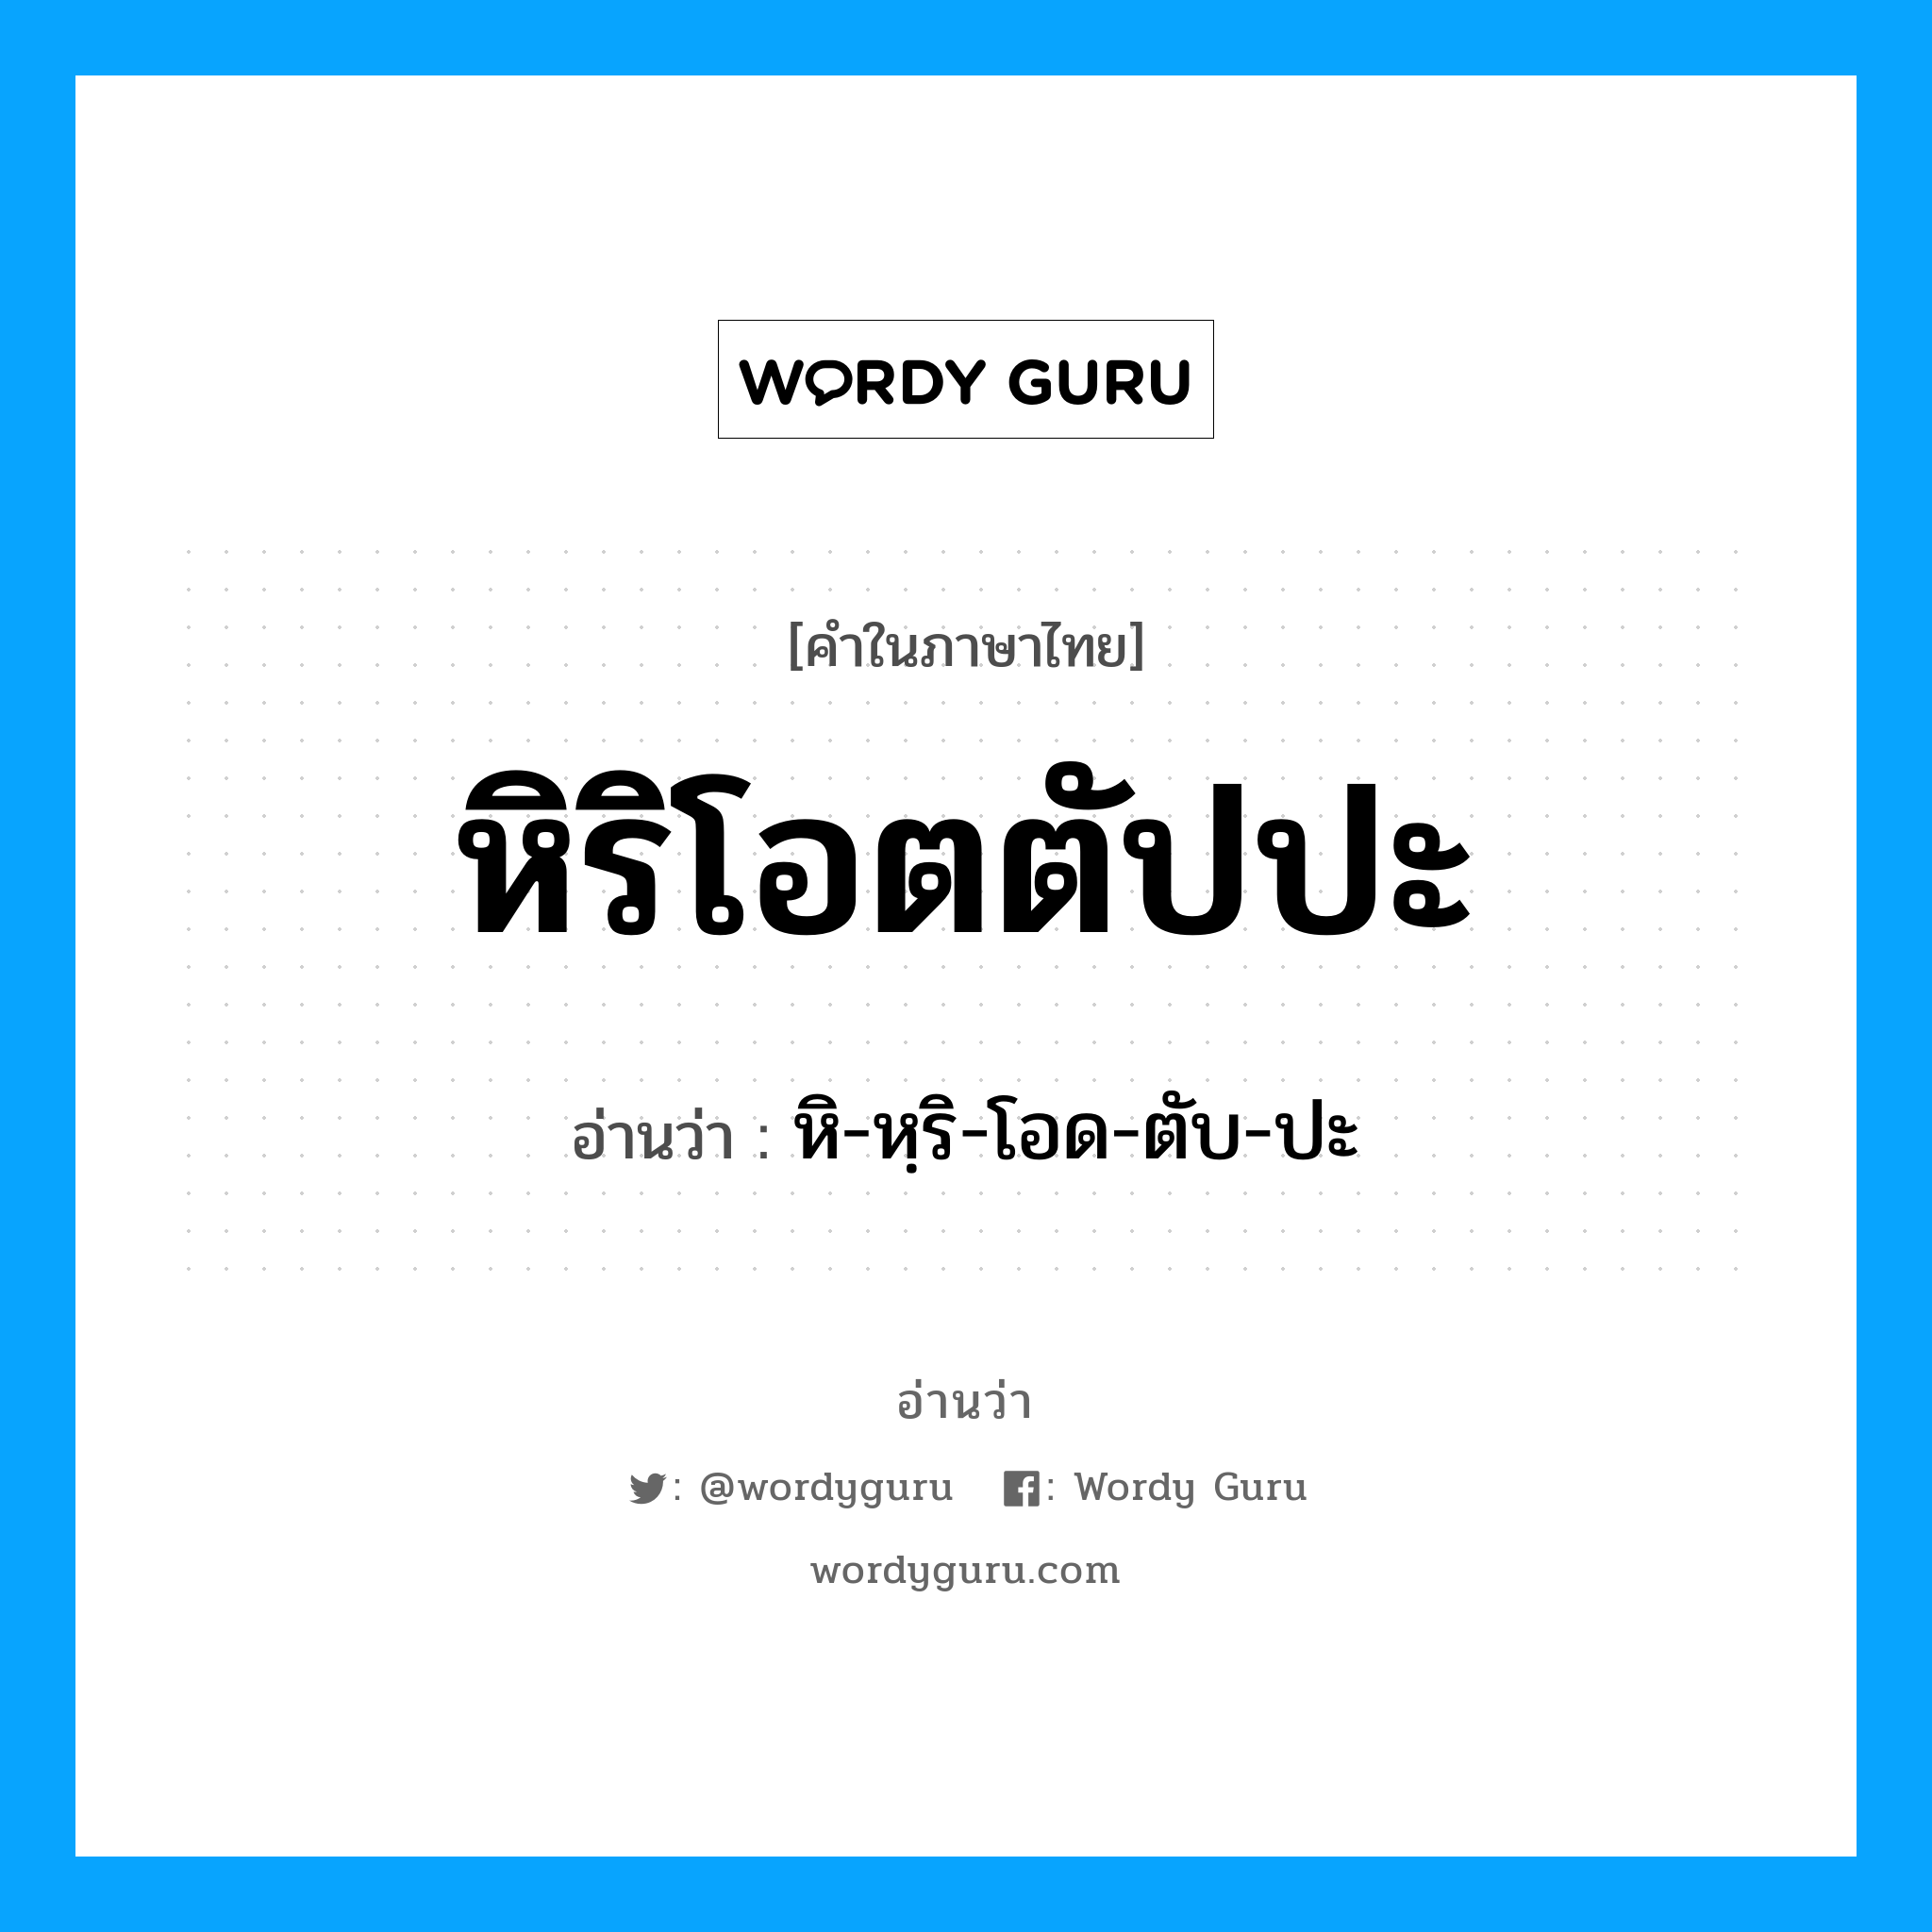 หิ-หฺริ-โอด-ตับ-ปะ เป็นคำอ่านของคำไหน?, คำในภาษาไทย หิ-หฺริ-โอด-ตับ-ปะ อ่านว่า หิริโอตตัปปะ